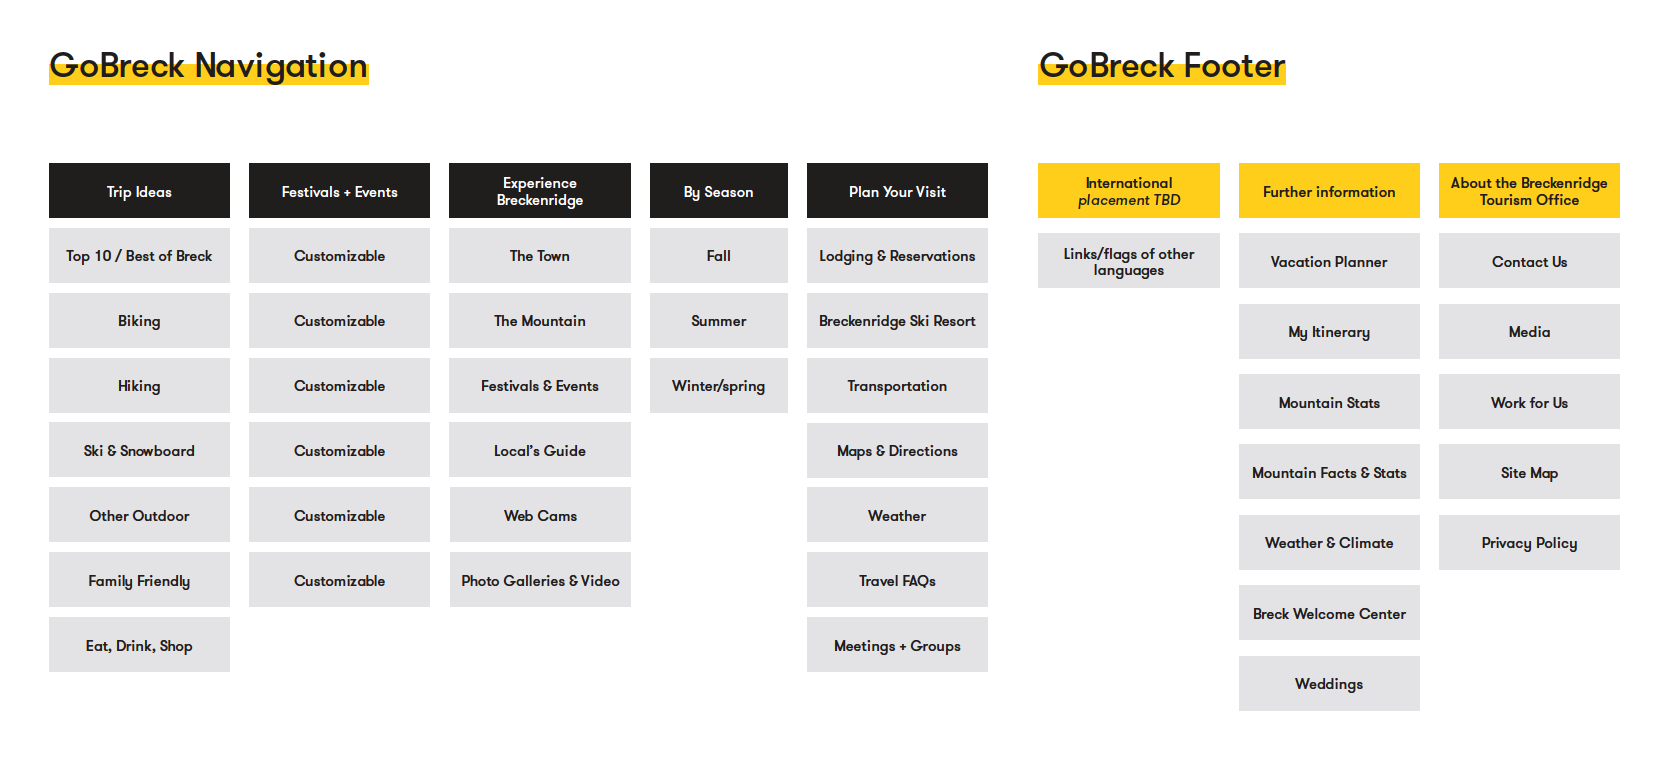 GoBreck's Navigation Structure